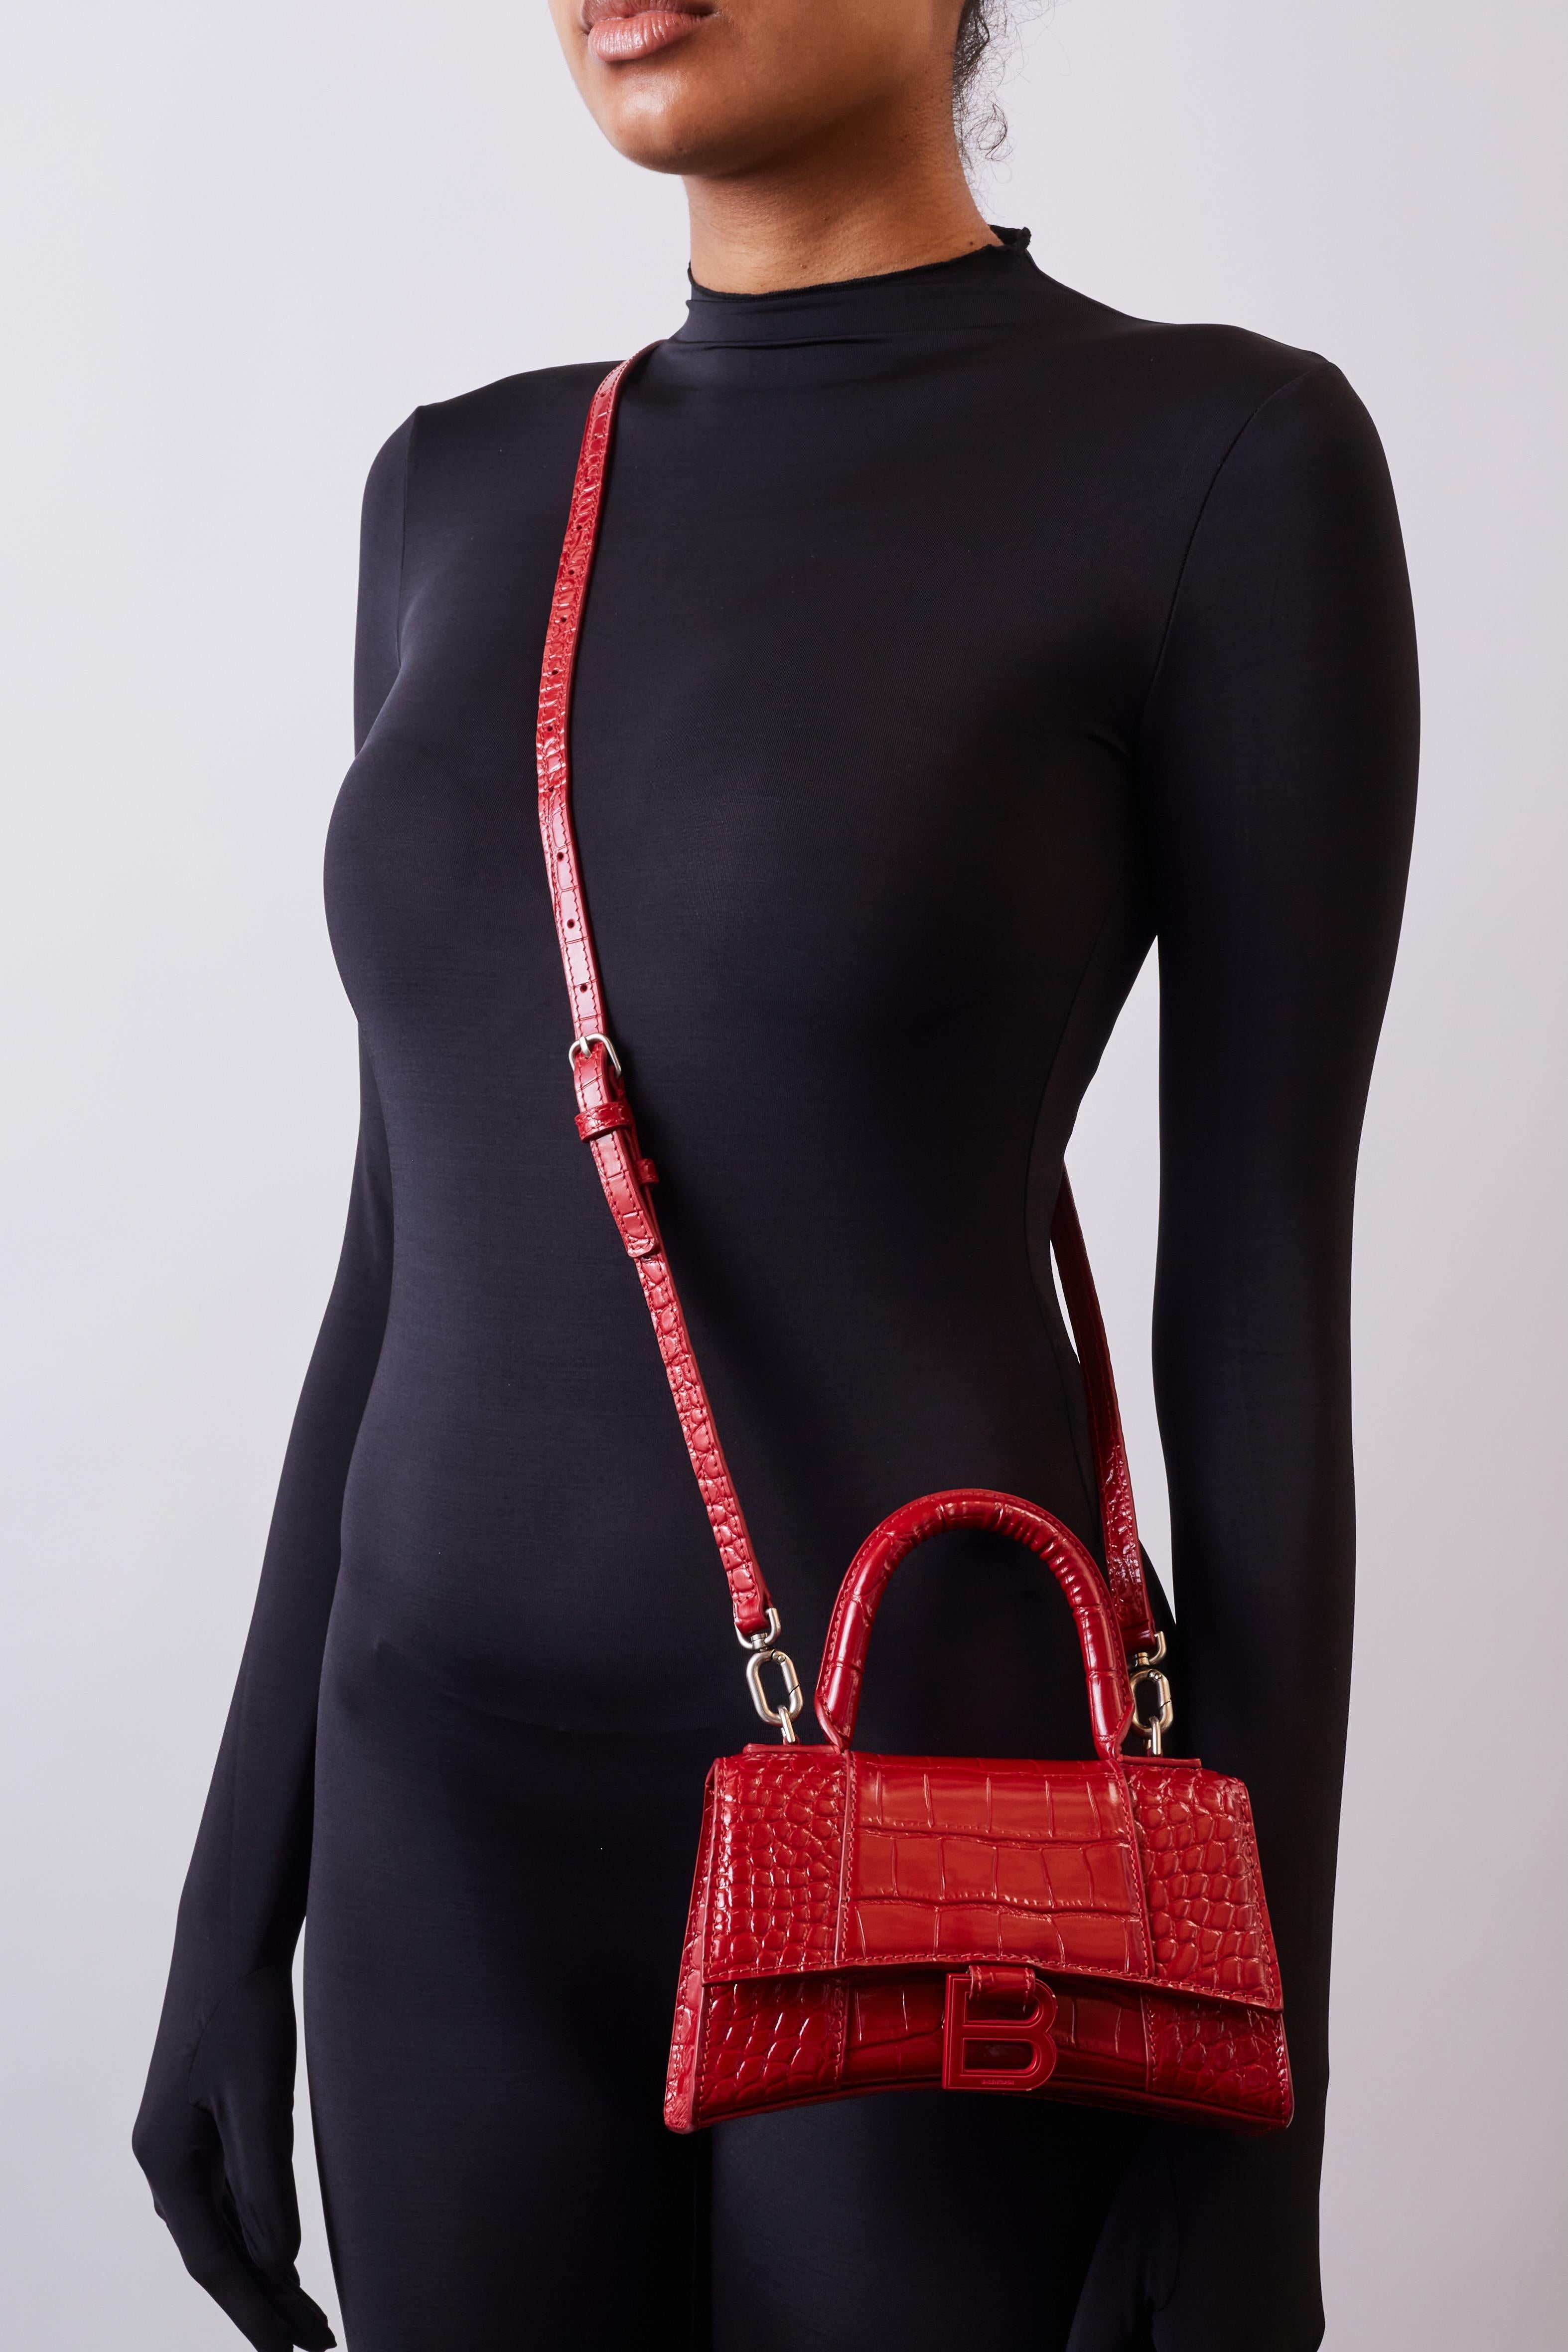 Diese zierliche Handtasche ist aus glasiertem Kalbsleder mit Krokodilprägung in leuchtendem Rot gefertigt. Die Tasche hat einen Tragegriff und einen optionalen Schulterriemen. Die Tasche verfügt außerdem über den charakteristischen Balenciaga